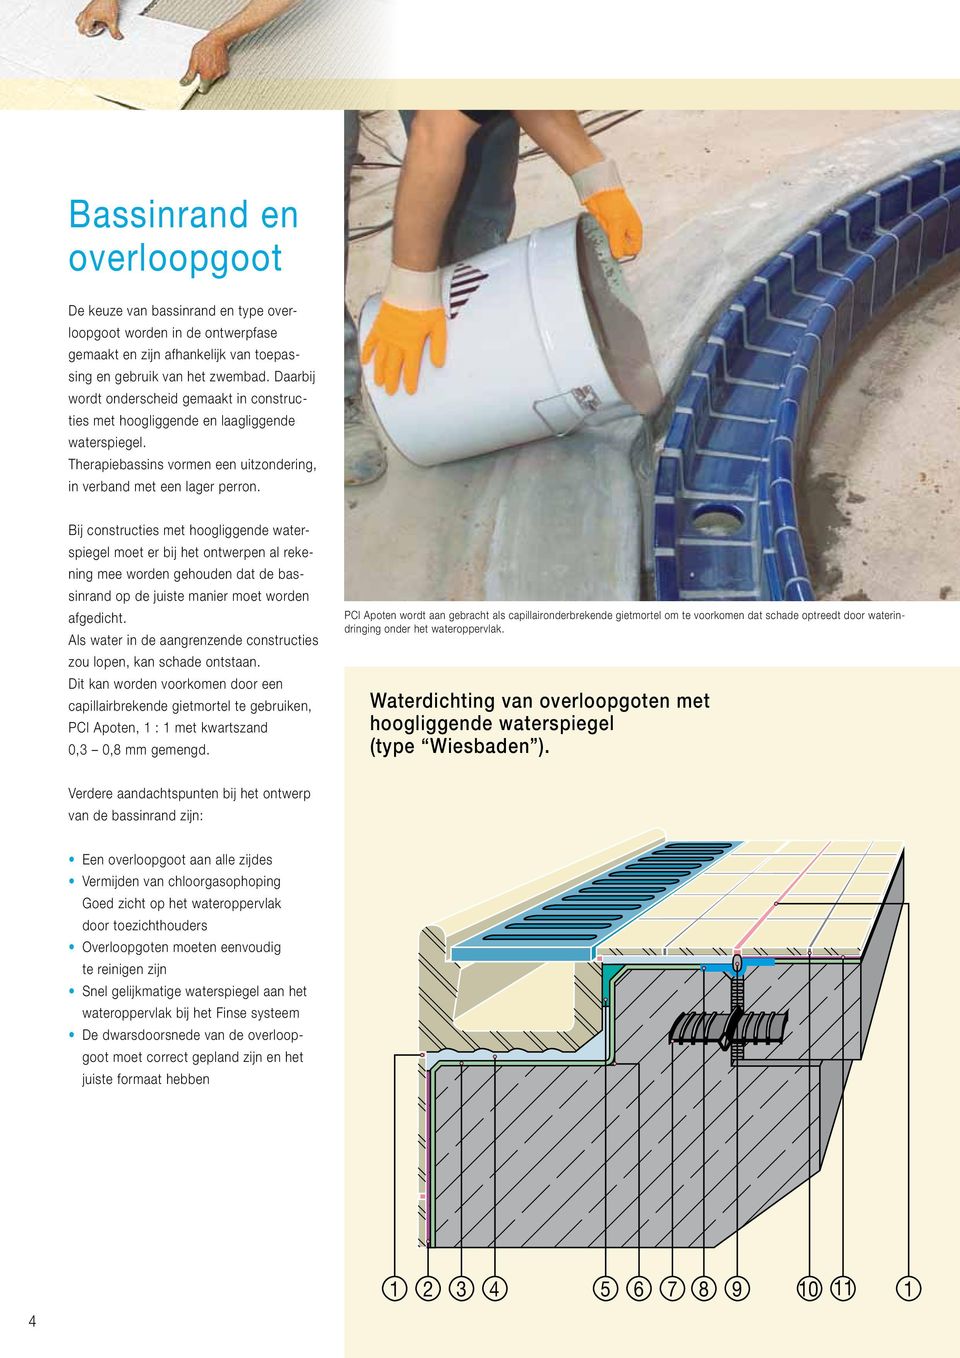 Bij constructies met hoogliggende waterspiegel moet er bij het ontwerpen al rekening mee worden gehouden dat de bassinrand op de juiste manier moet worden afgedicht.